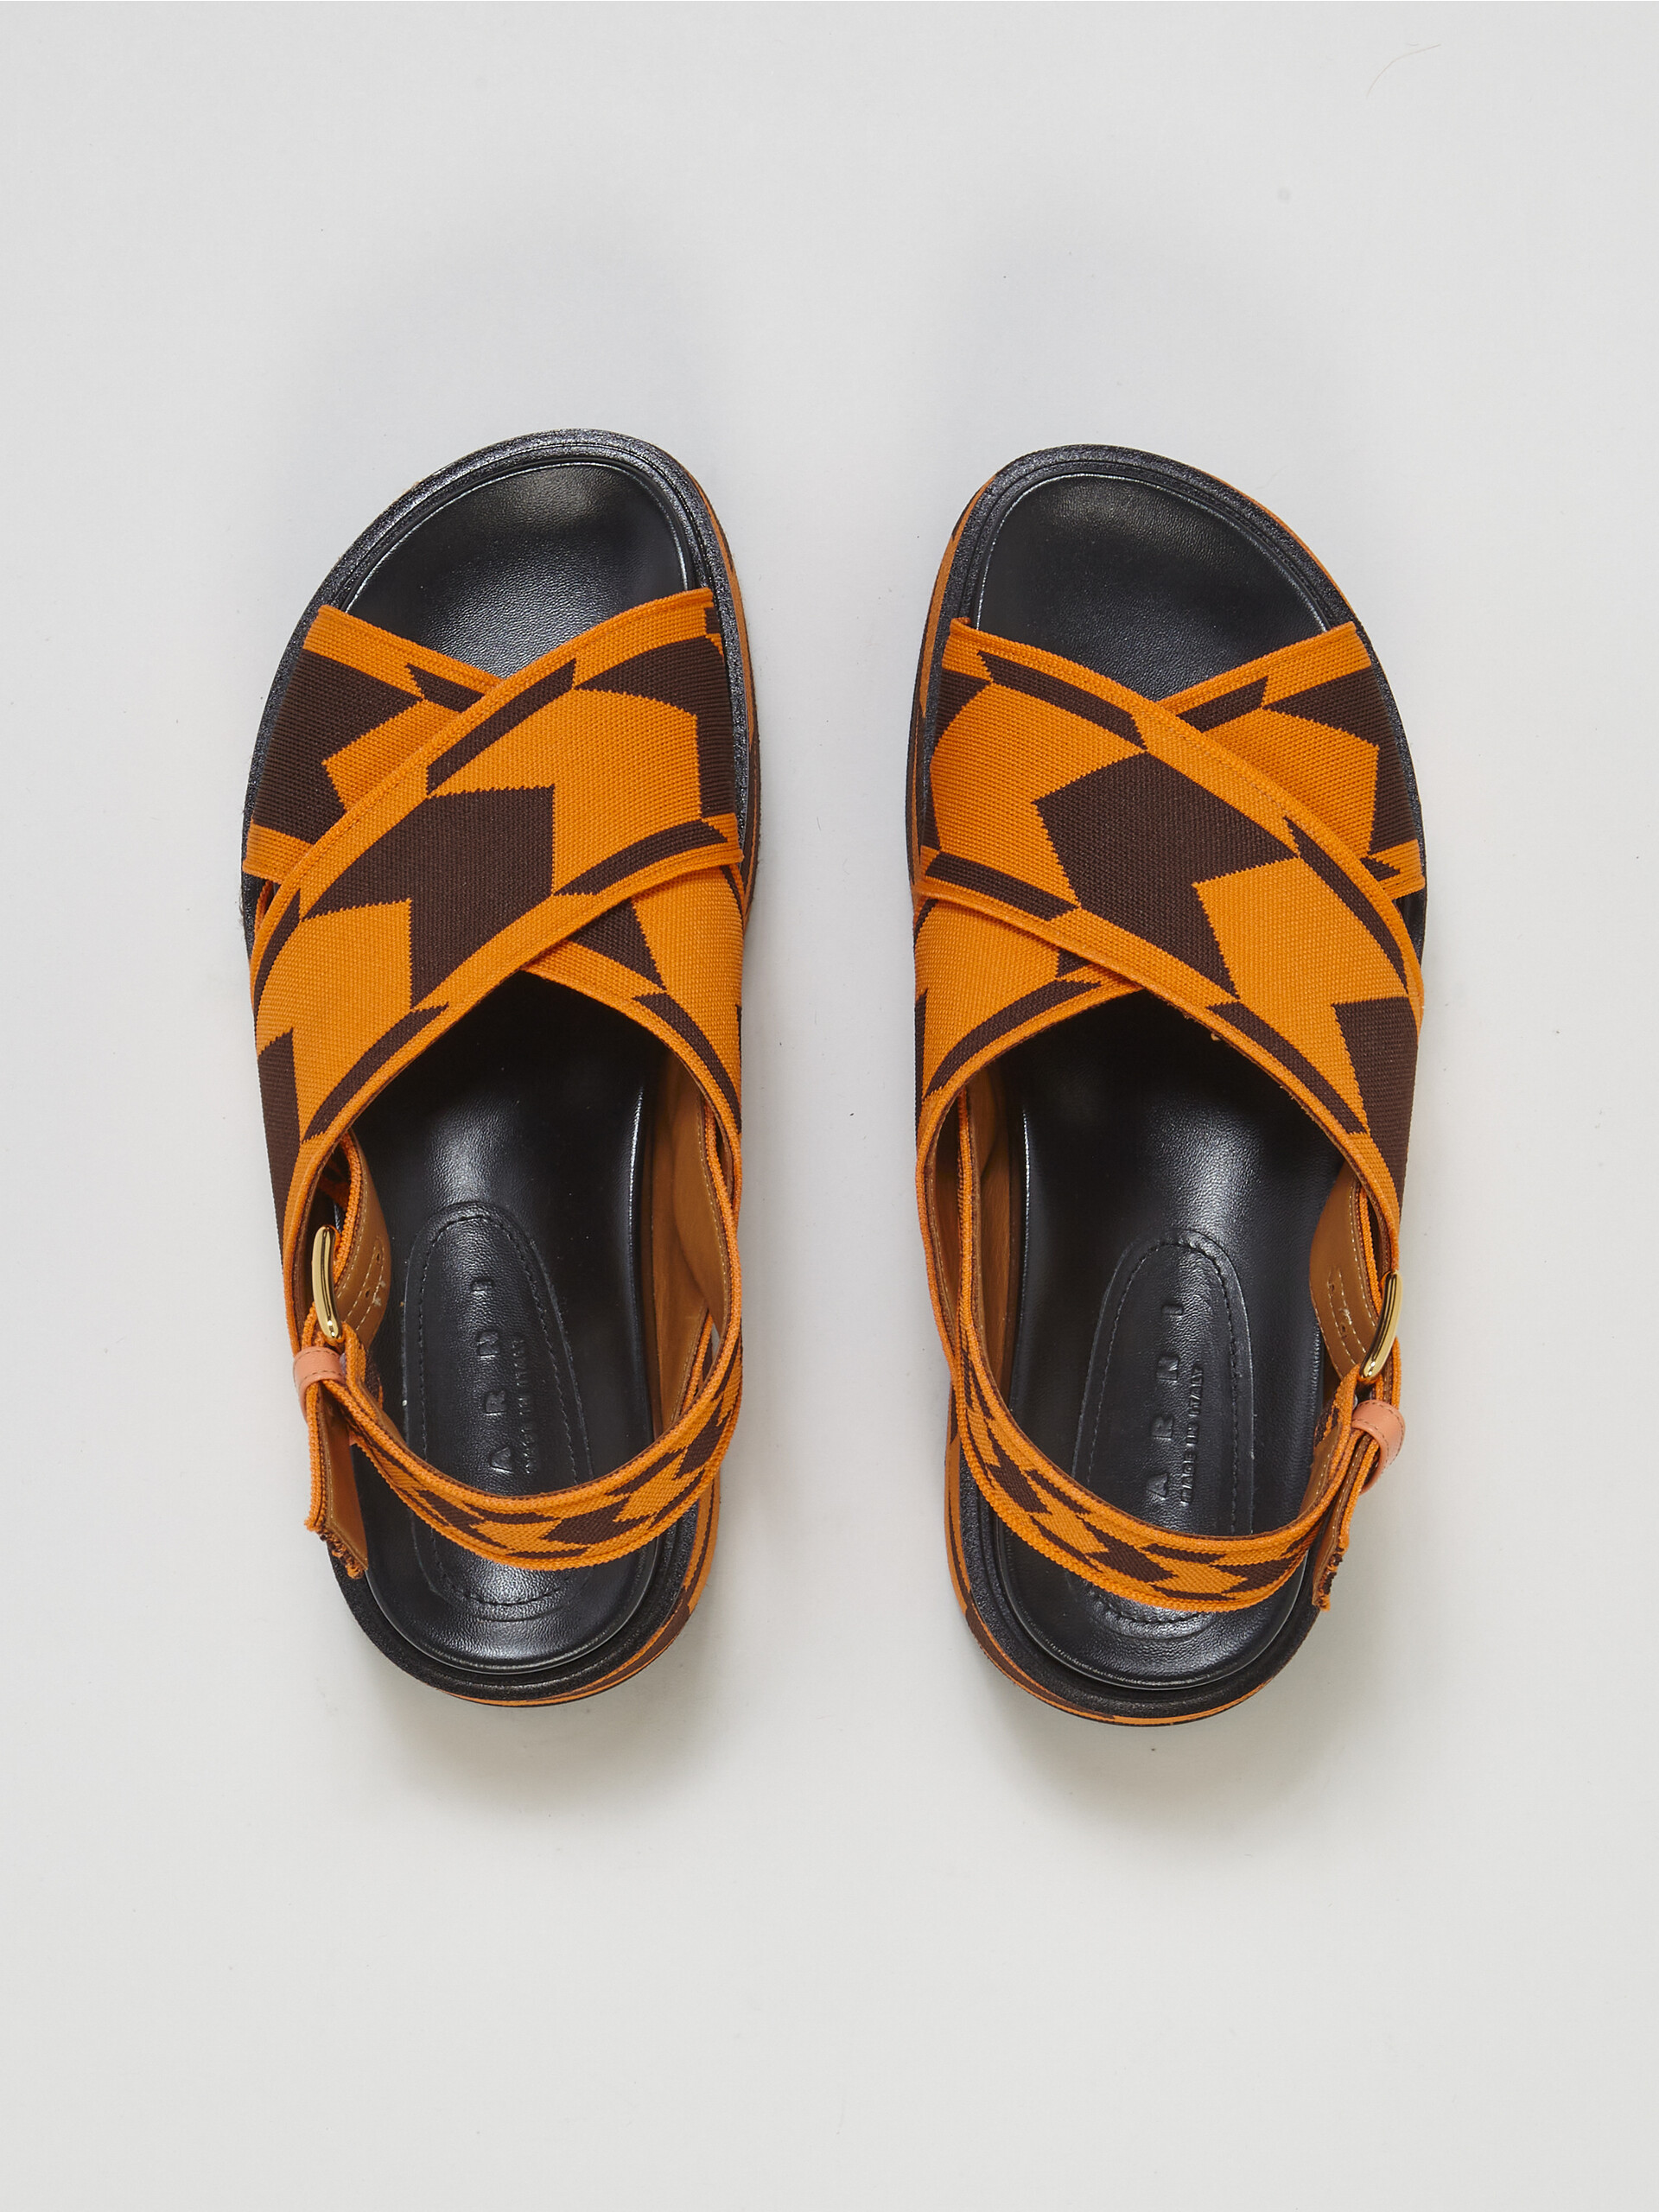 Houndstooth jacquard wedge sandal - Sandals - Image 4